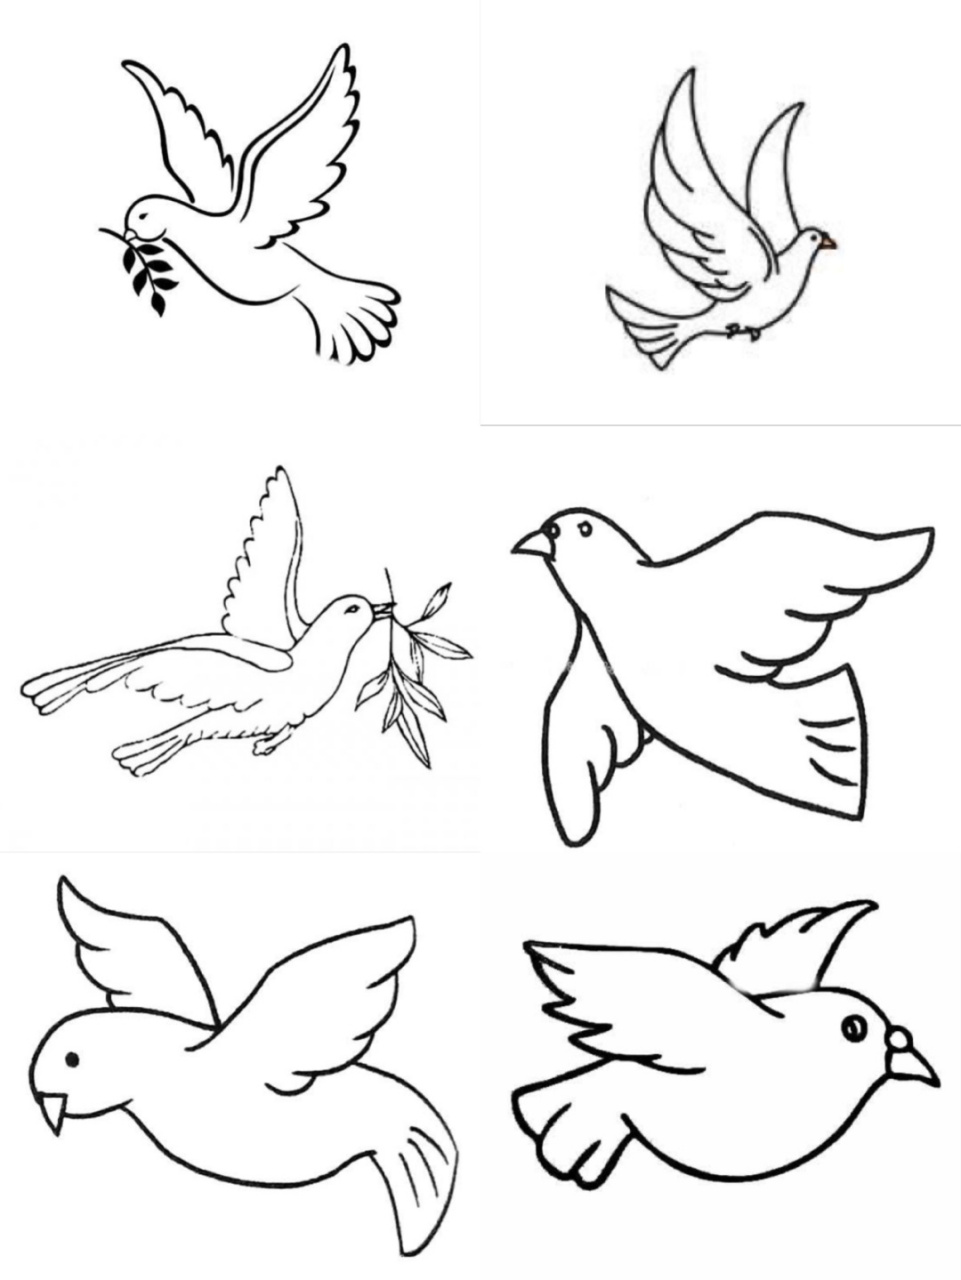 【简笔画】鸽子,附两张图 不同角度的鸽子简笔画,和平鸽 